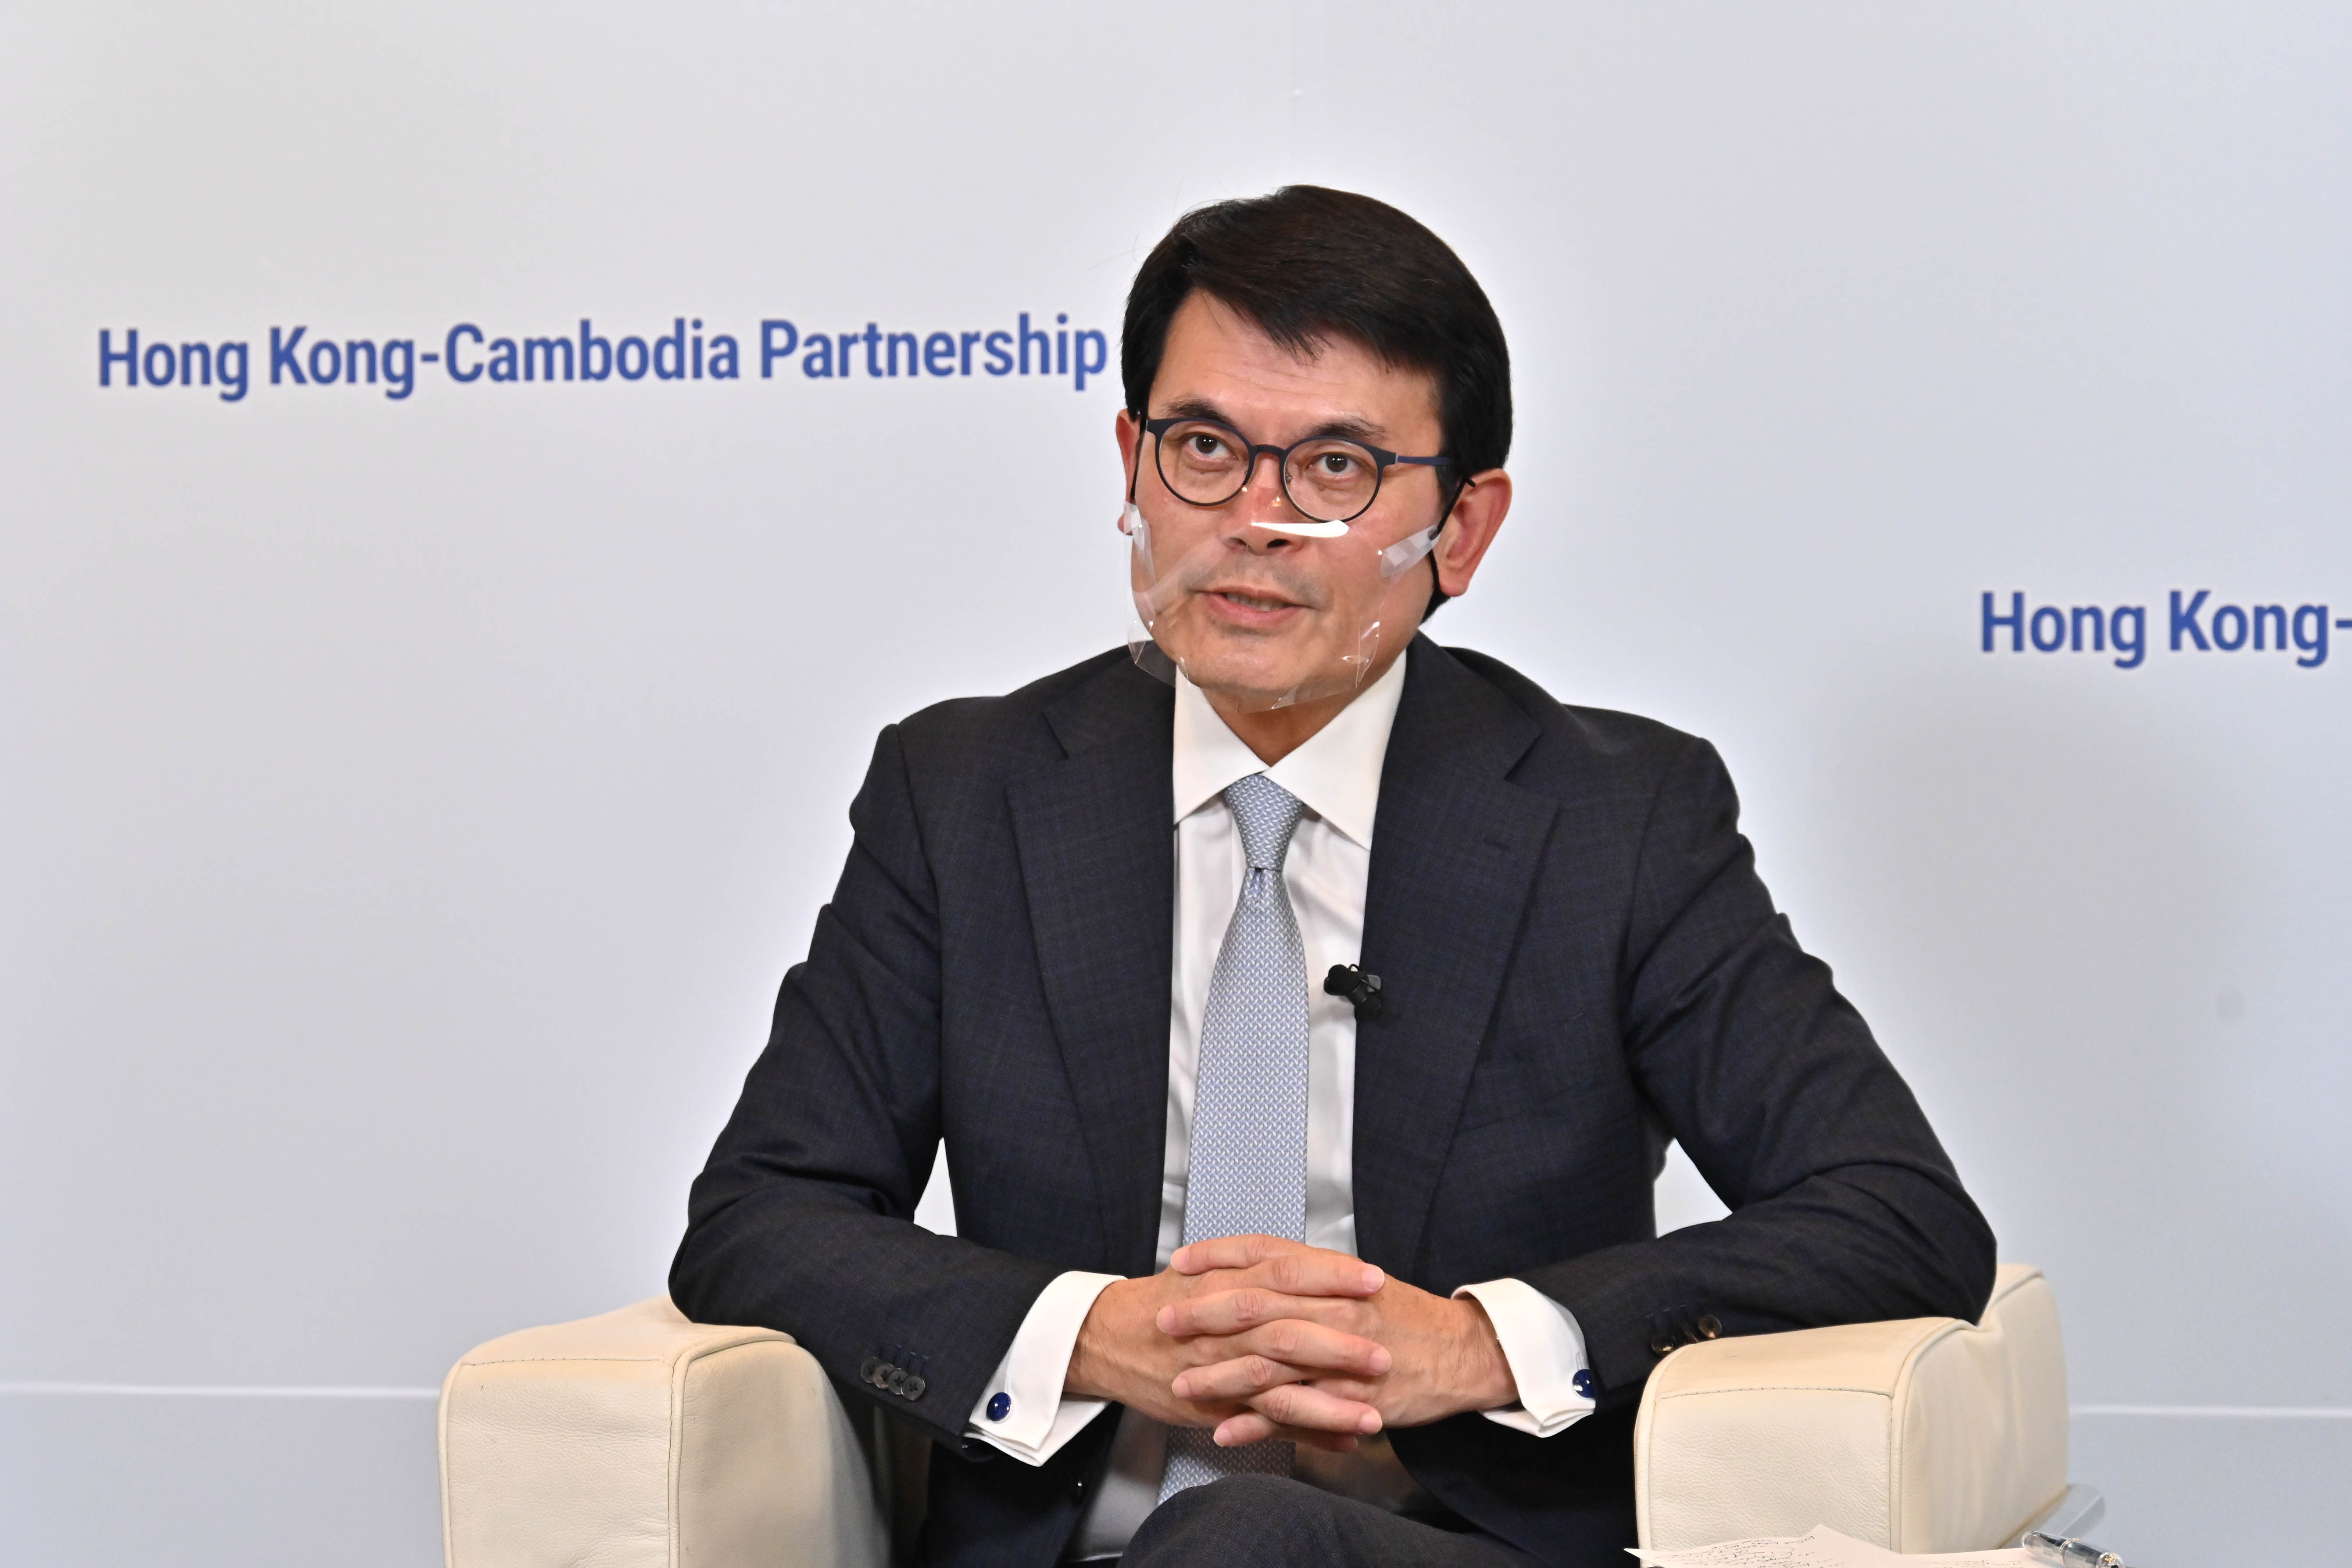 商務及經濟發展局局長邱騰華在「香港與柬埔寨同創機遇」網上研討會致開幕辭。